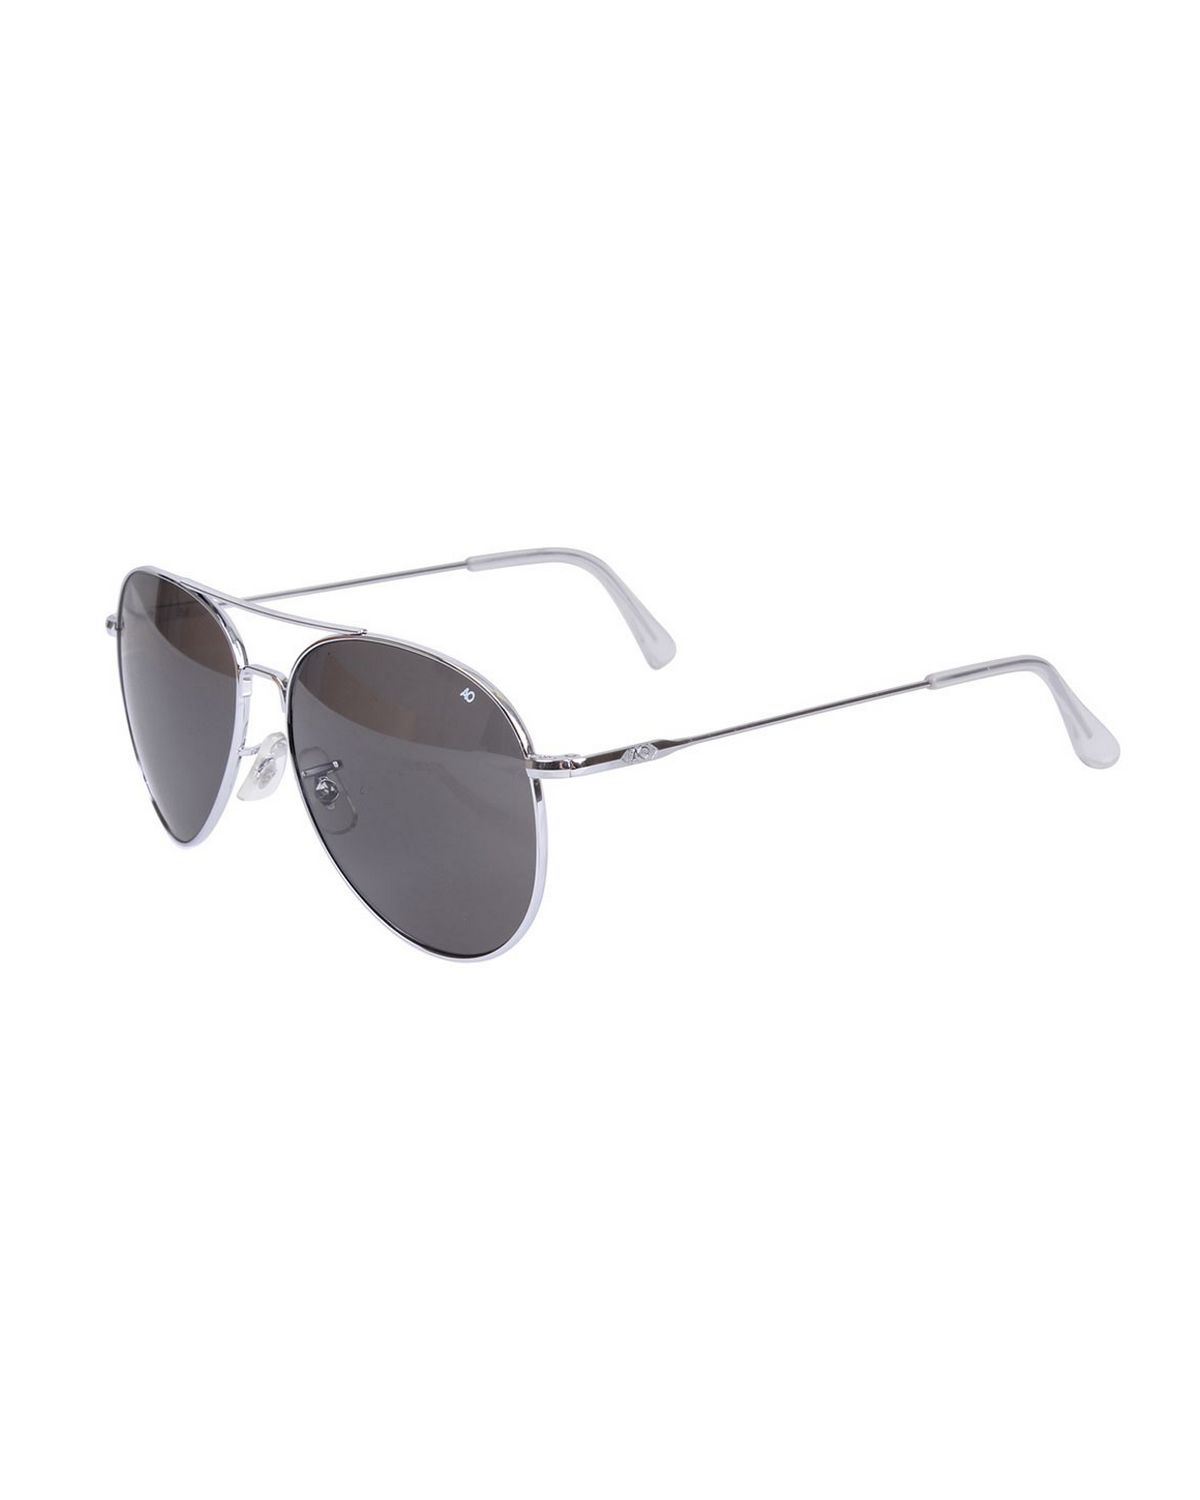 Sunglasses Genesis Ballistic Lens Eyewear 10344 uvex Black for sale online 